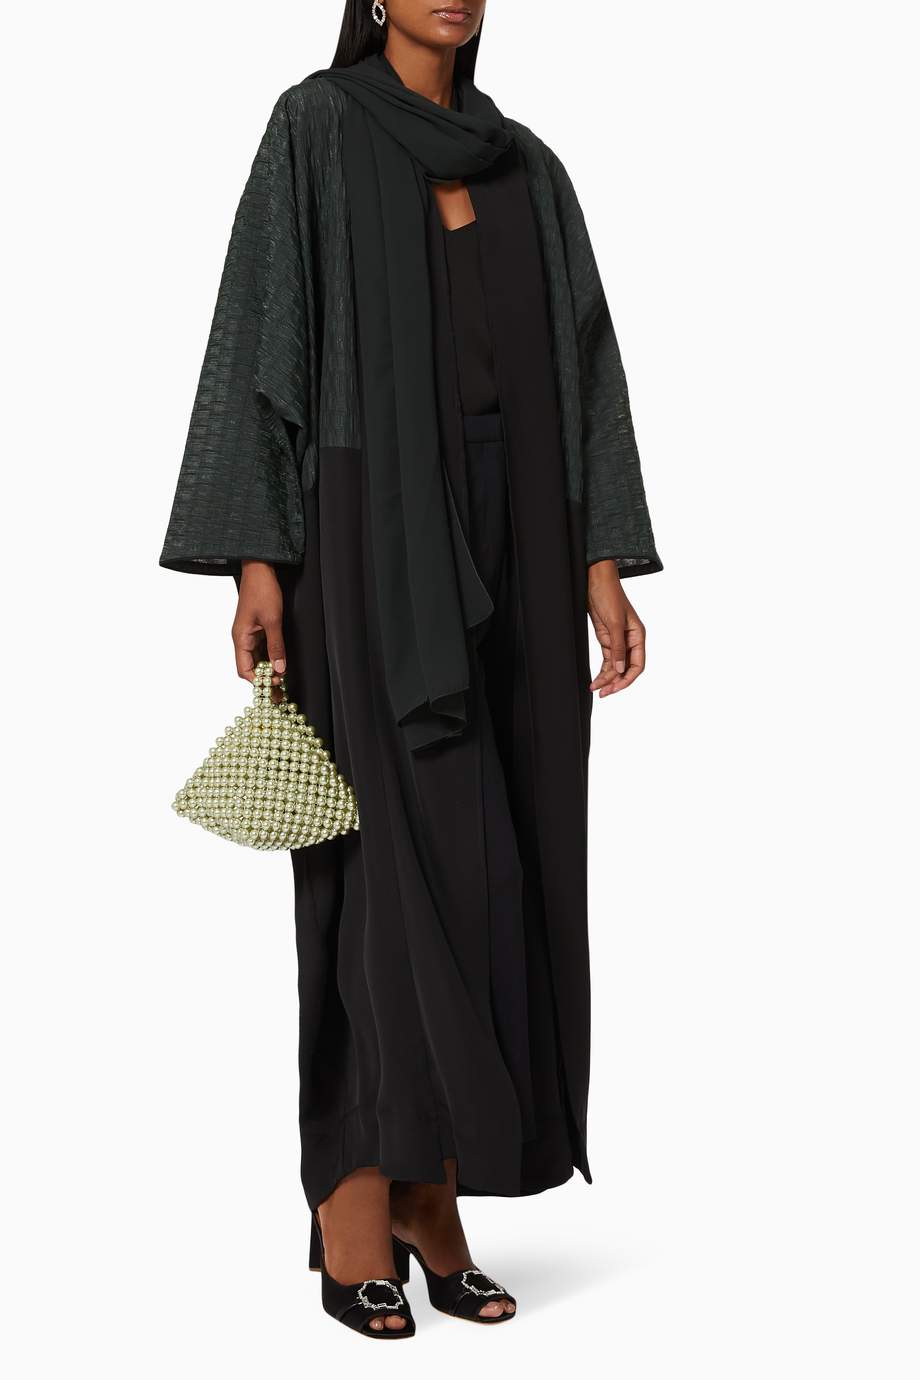 Shop CHI-KA Green Metallic Jacquard Abaya for Women | Ounass UAE